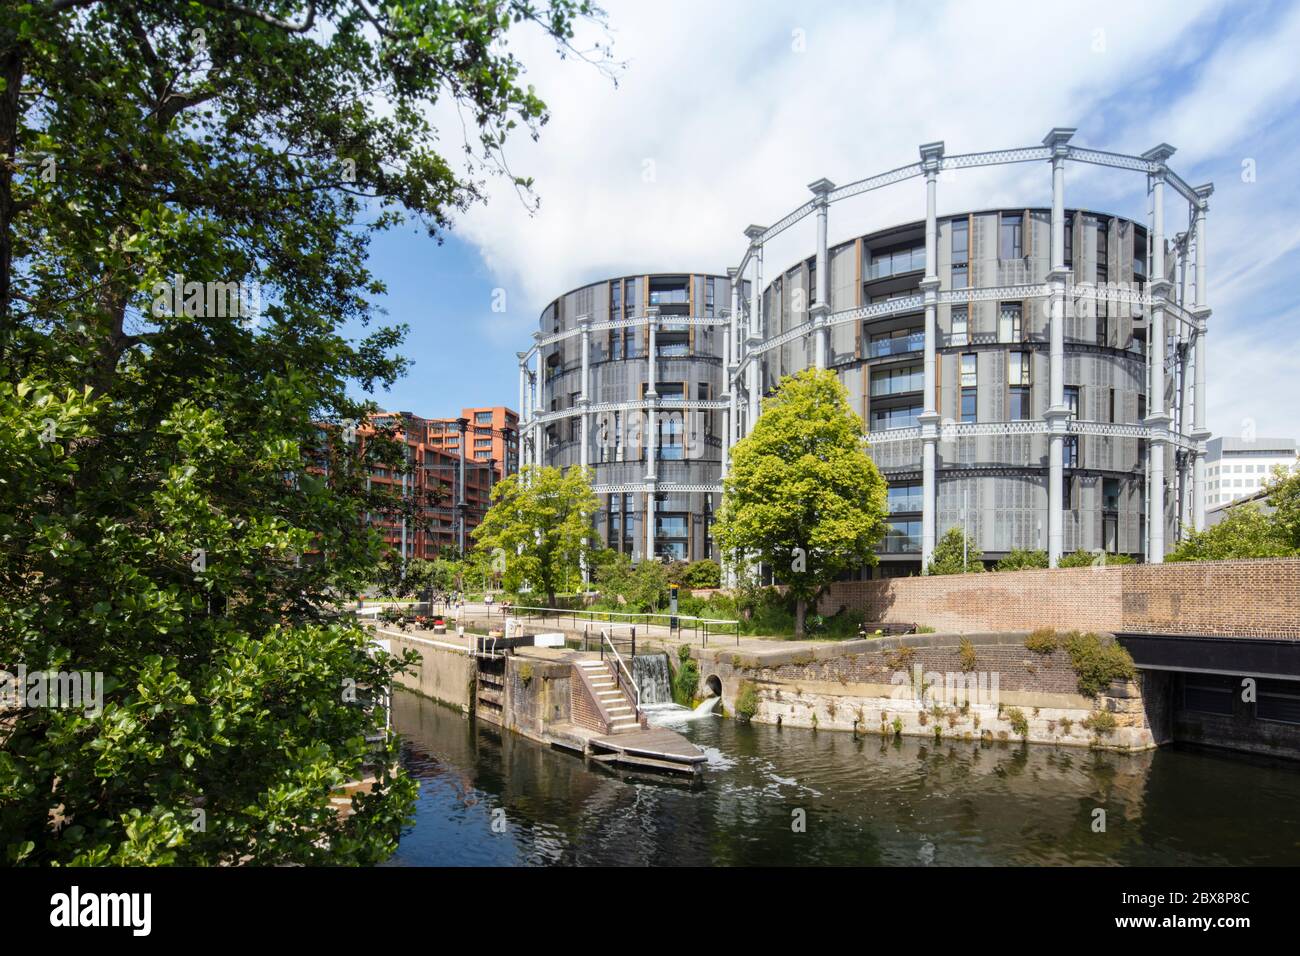 Regno Unito, Londra, St Pancras Lock, Regent's Canal. Lo sviluppo del Gasholder Park 2019/2020 a Kings Cross di Bell Phillips, WilkinsonEyre e Jonathan Tuckey Foto Stock